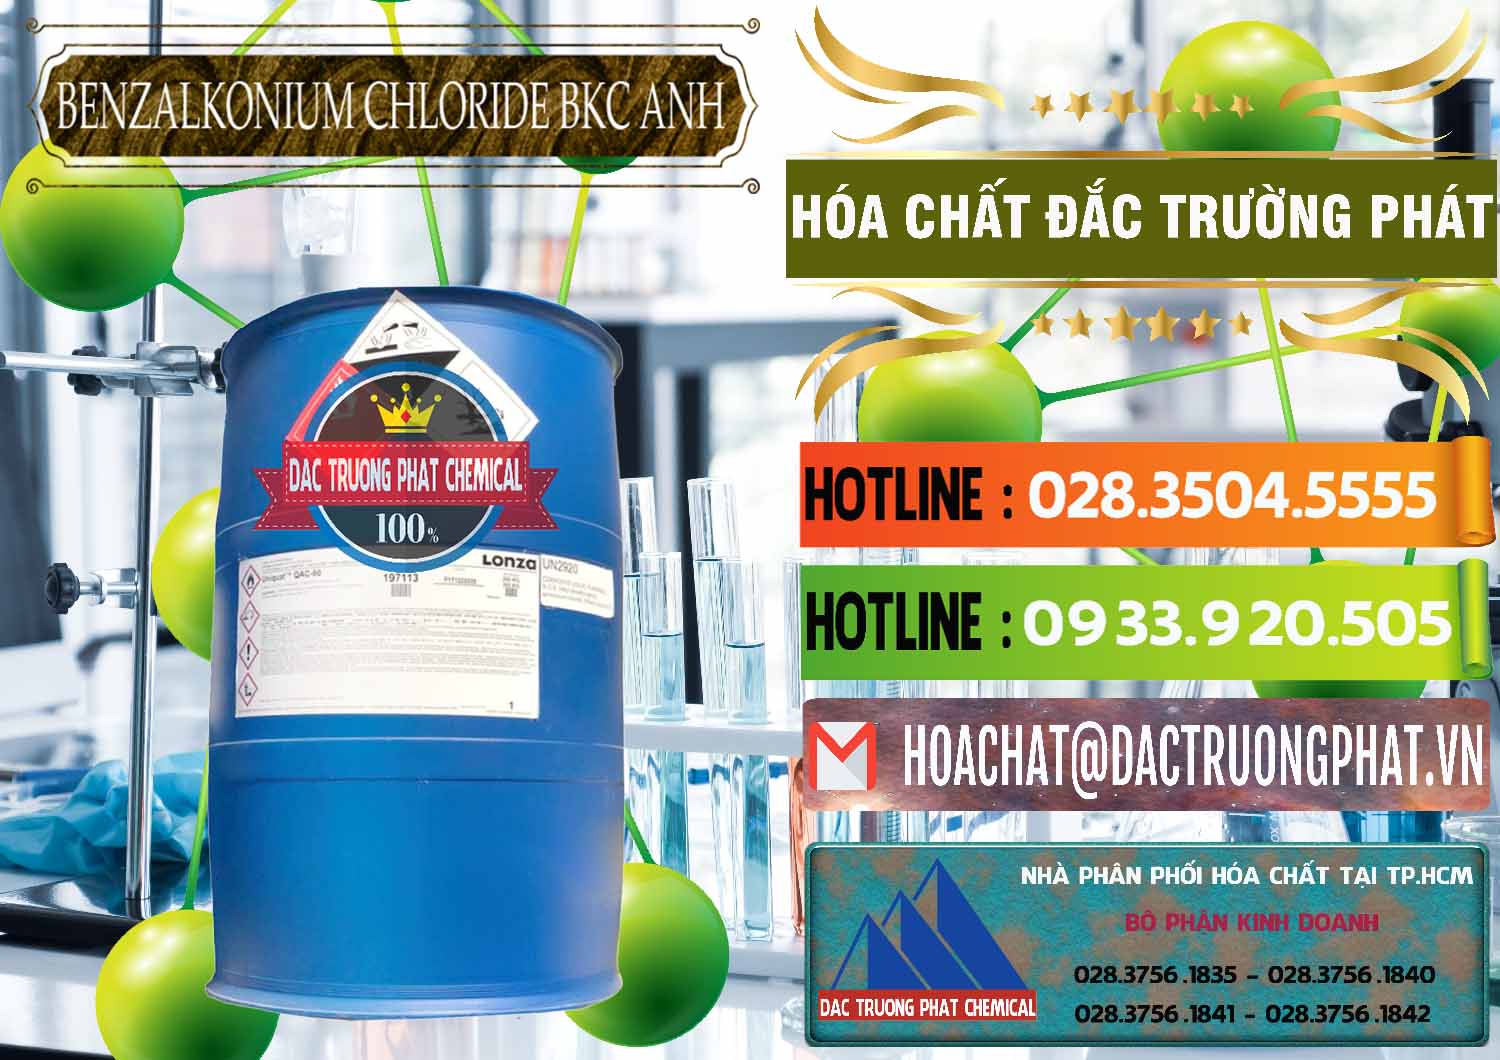 Cty phân phối _ bán BKC - Benzalkonium Chloride 80% Anh Quốc Uk Kingdoms - 0457 - Cty chuyên cung cấp và nhập khẩu hóa chất tại TP.HCM - cungcaphoachat.com.vn